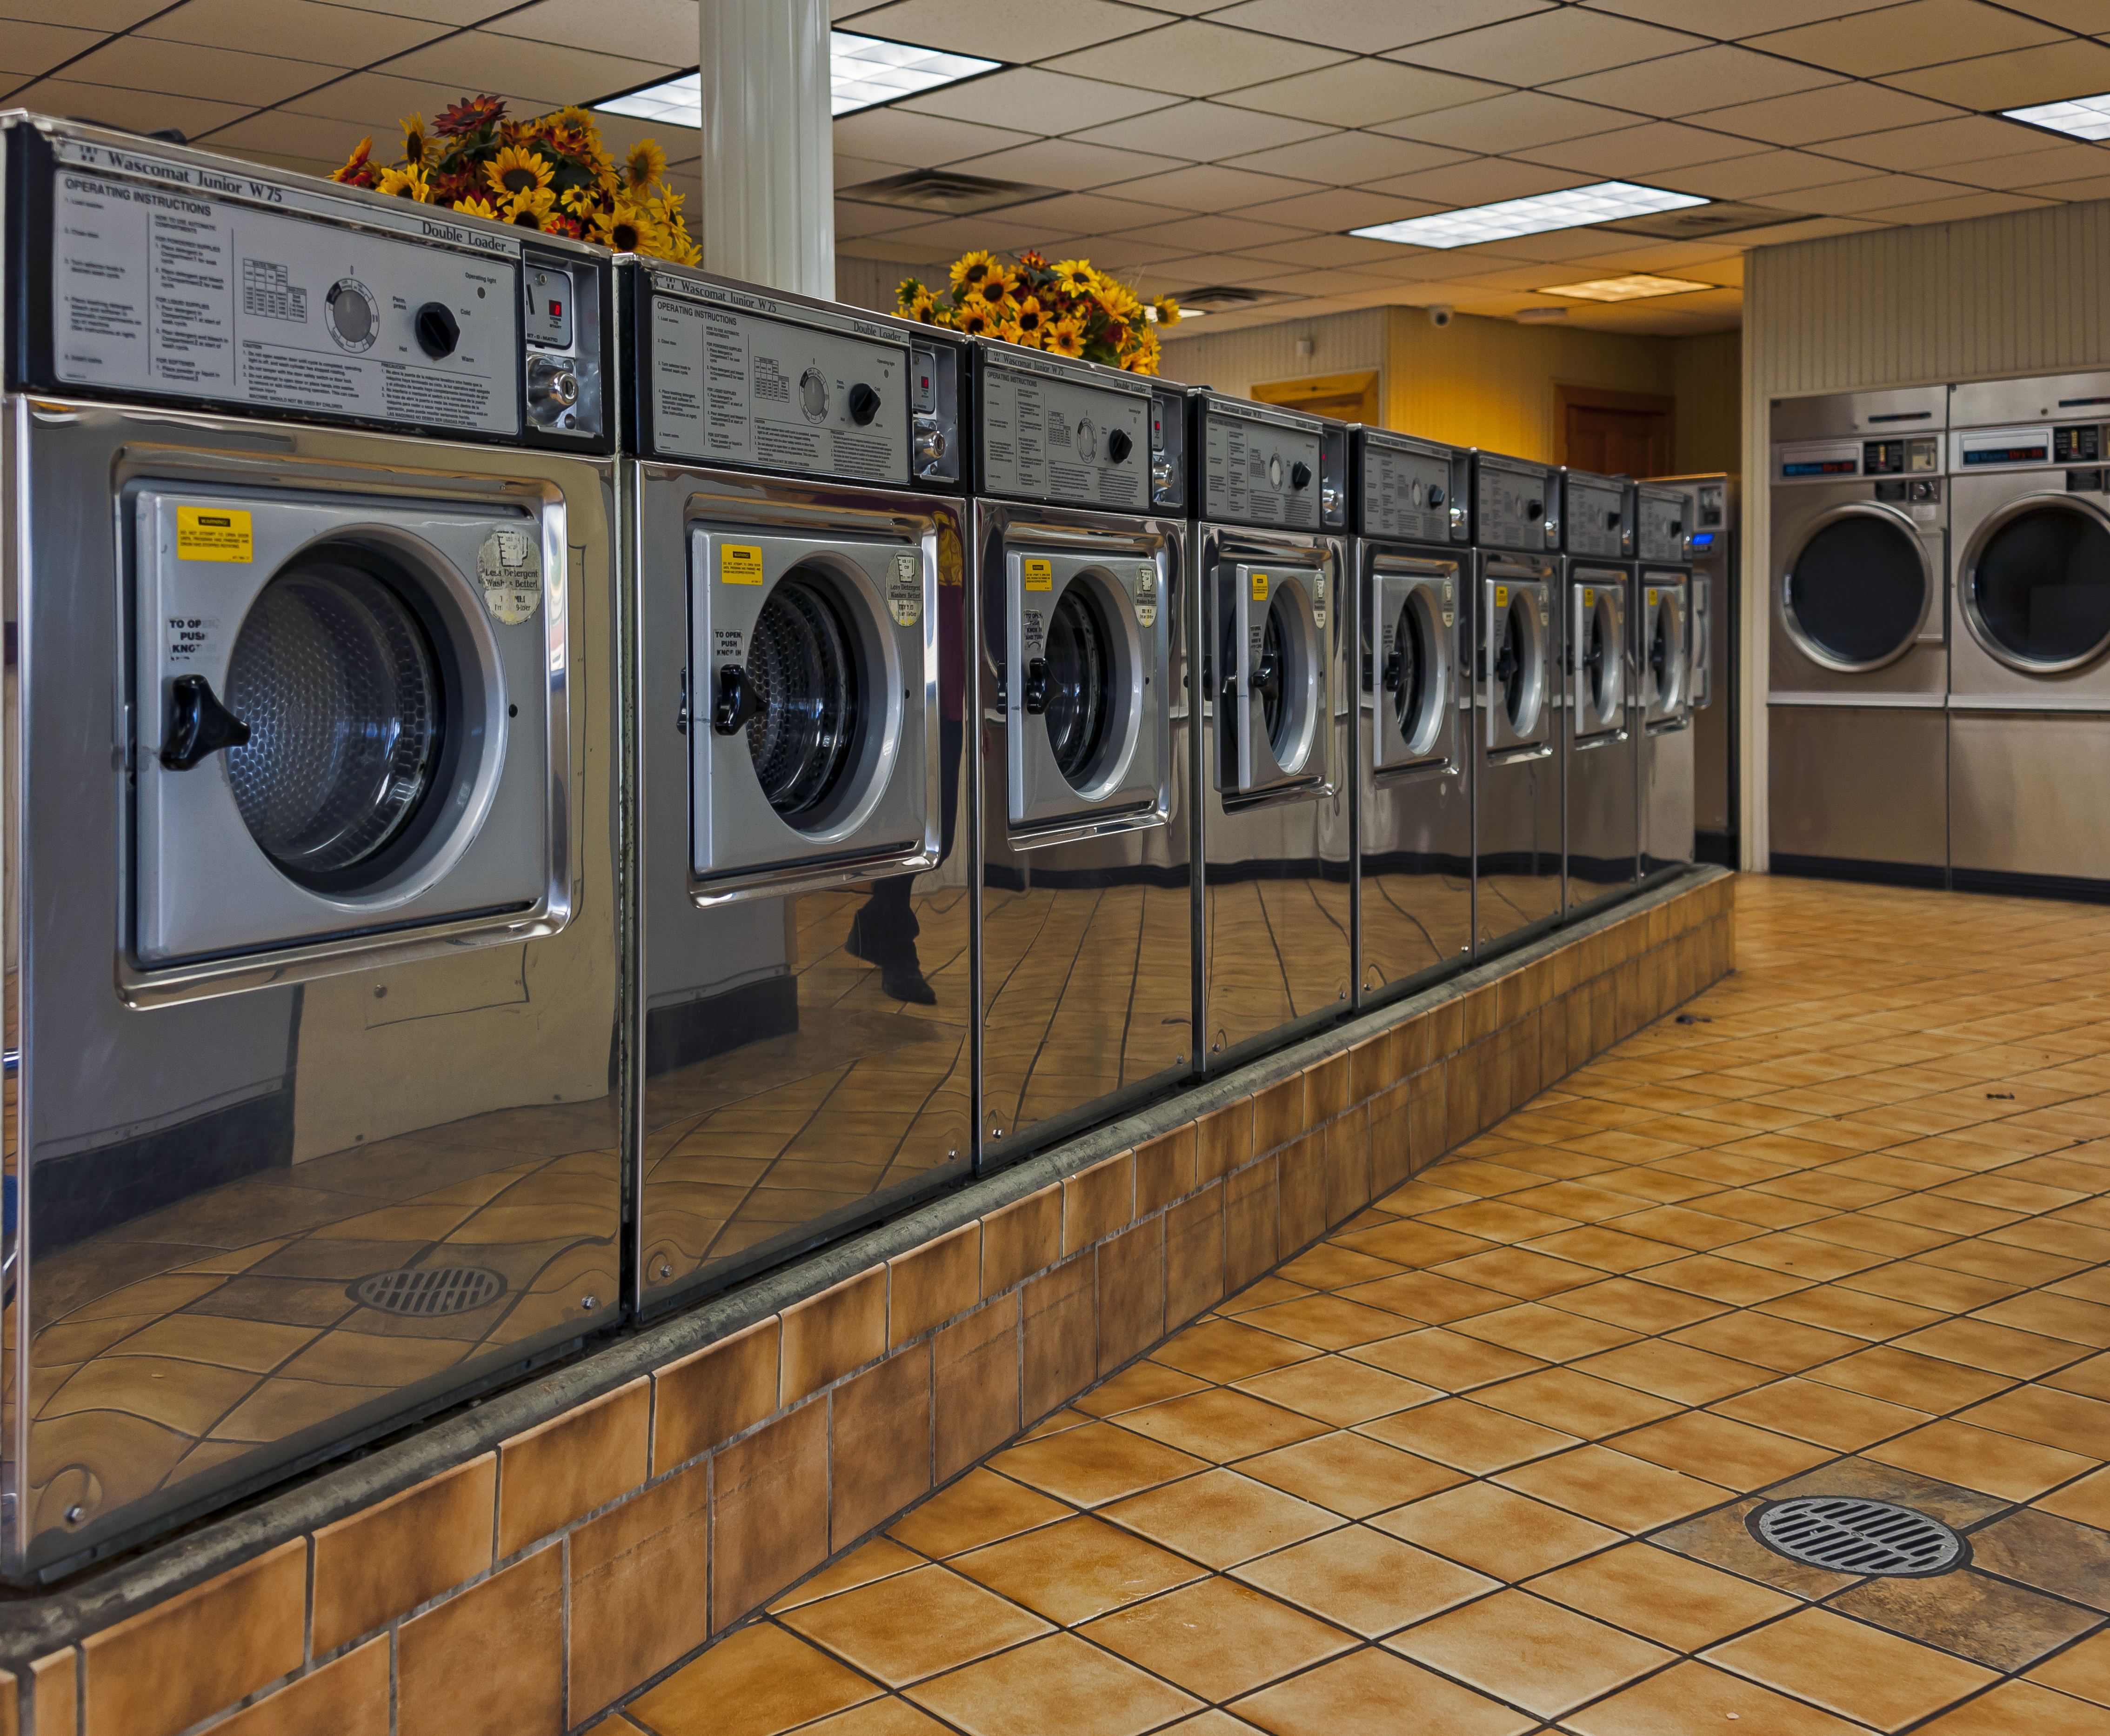 Lavandería de autoservicio o lavar la ropa en casa: ¿cuál sale más